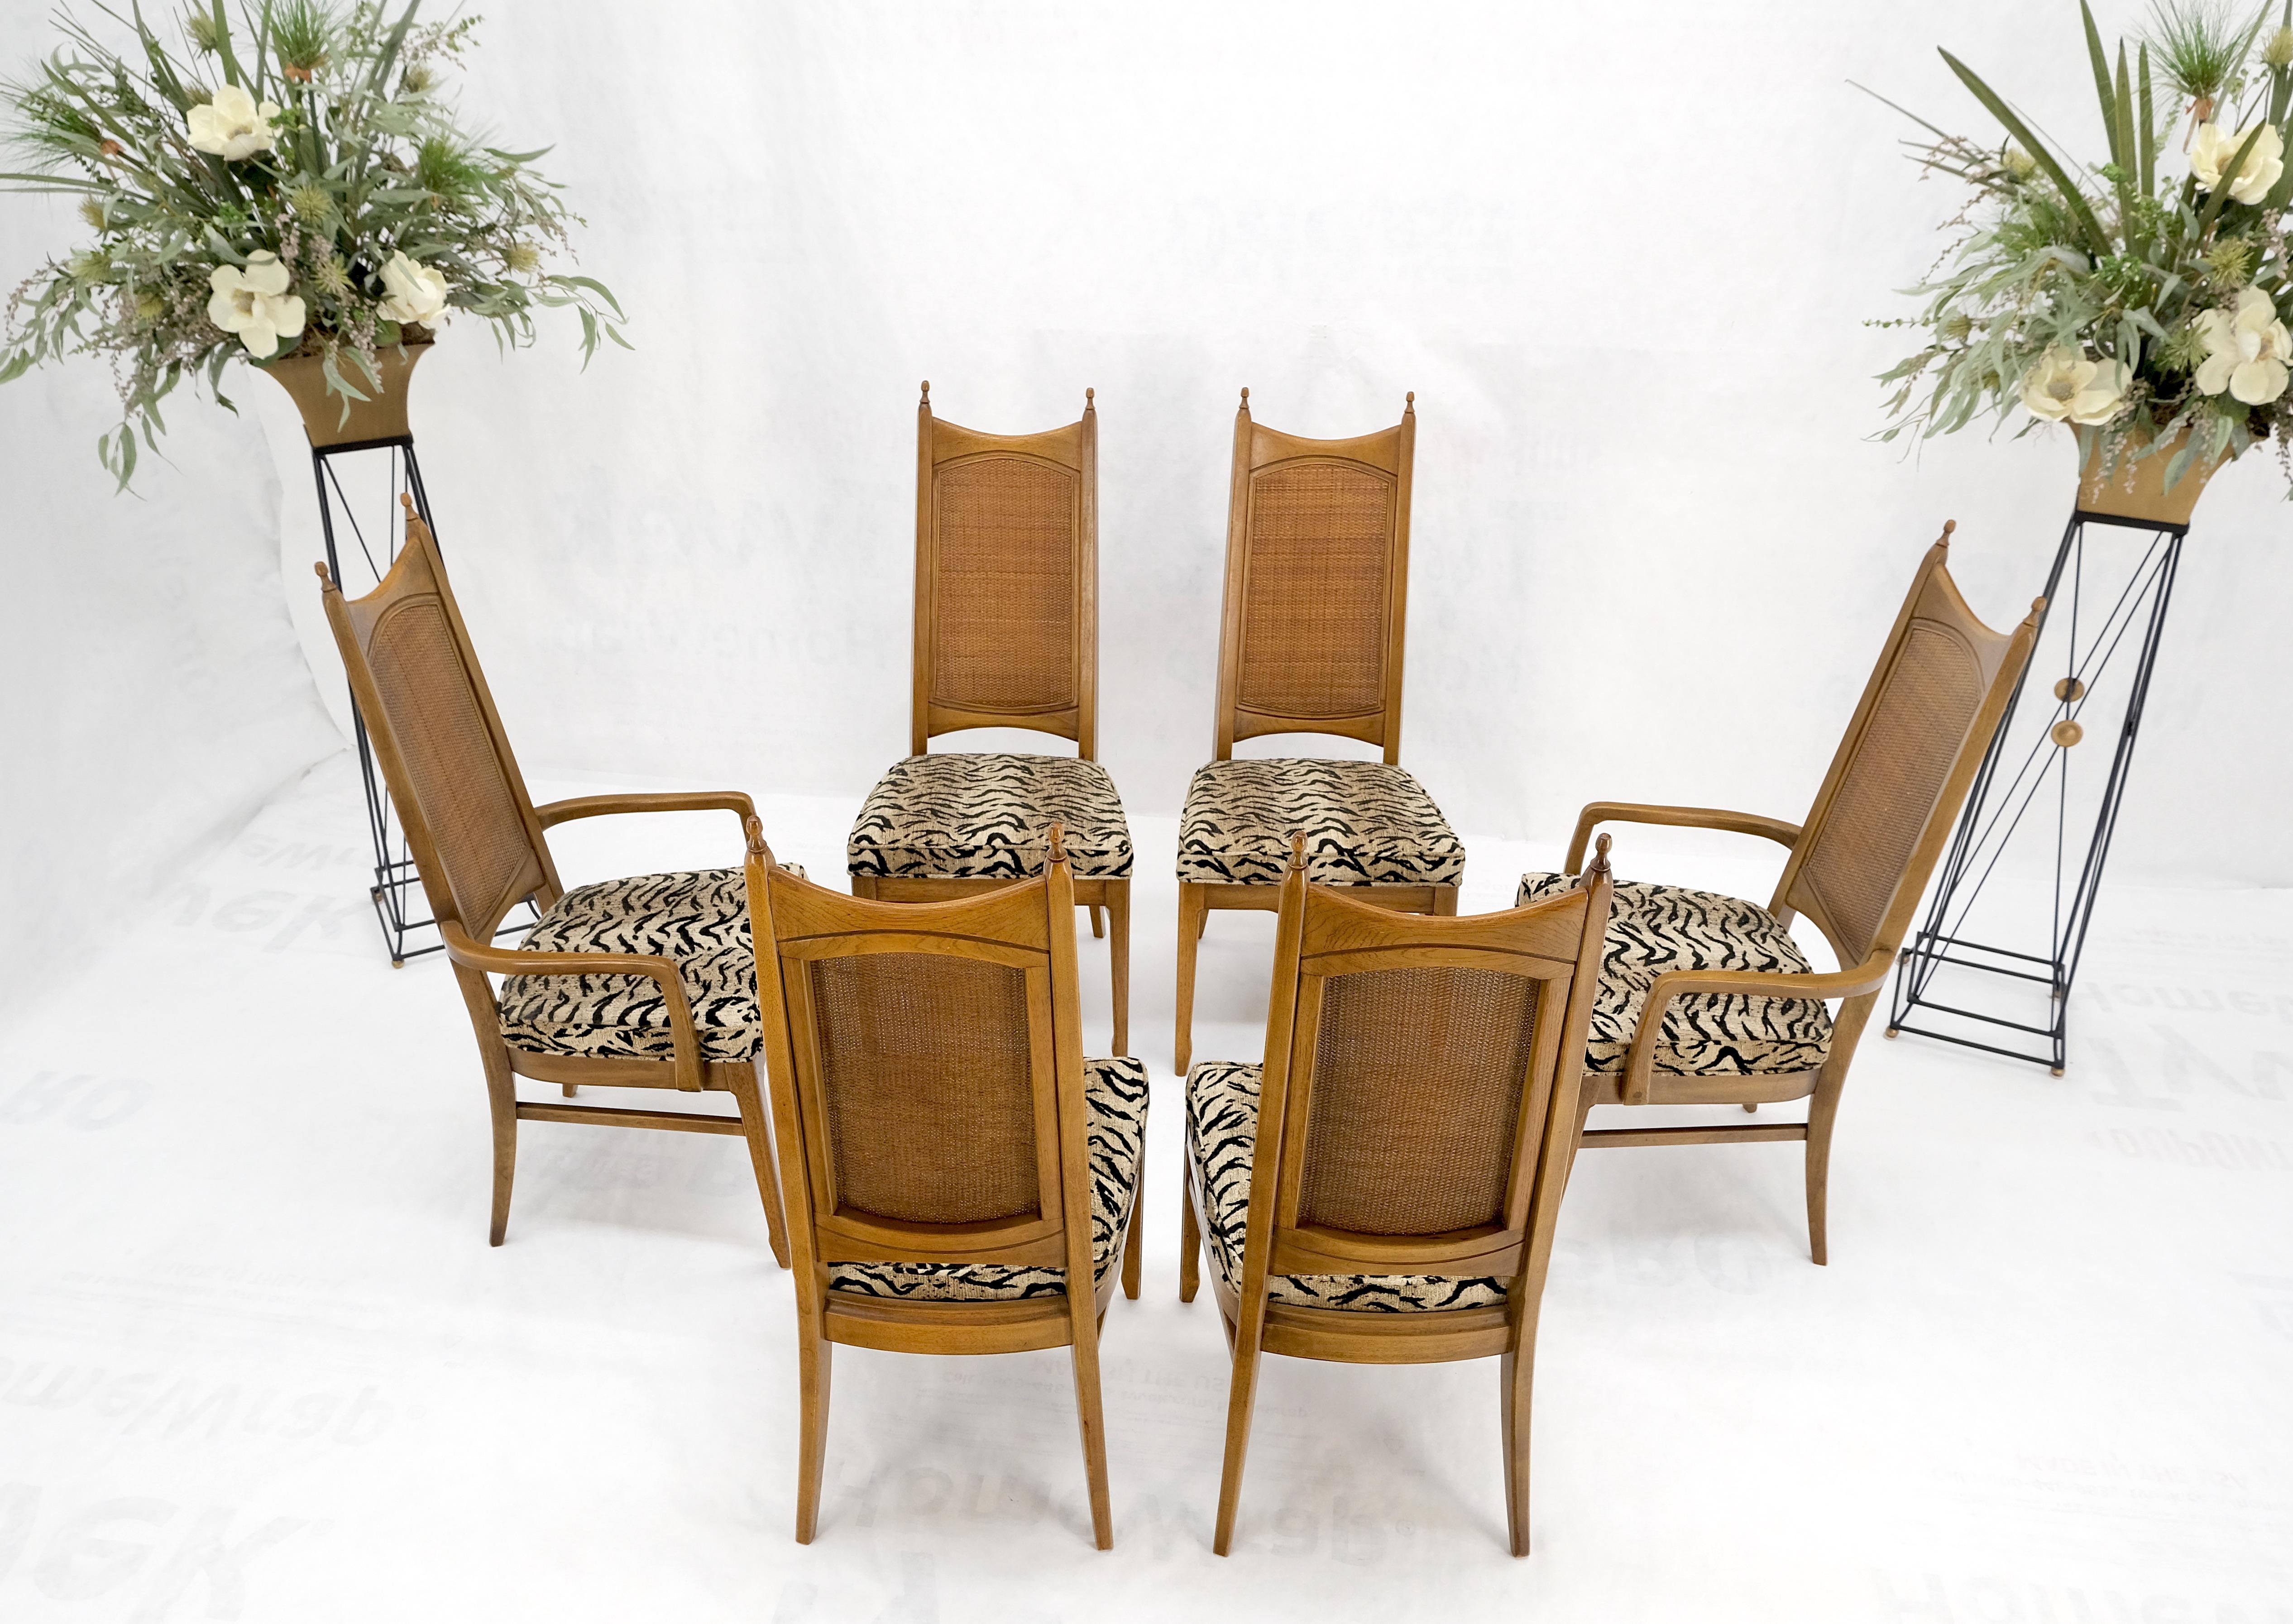 Satz von 6 Cane Tall Back Pecan Mid Century Modern Stühle MINT!
Natürliches Bio-Safari-Muster Polstermaterial.